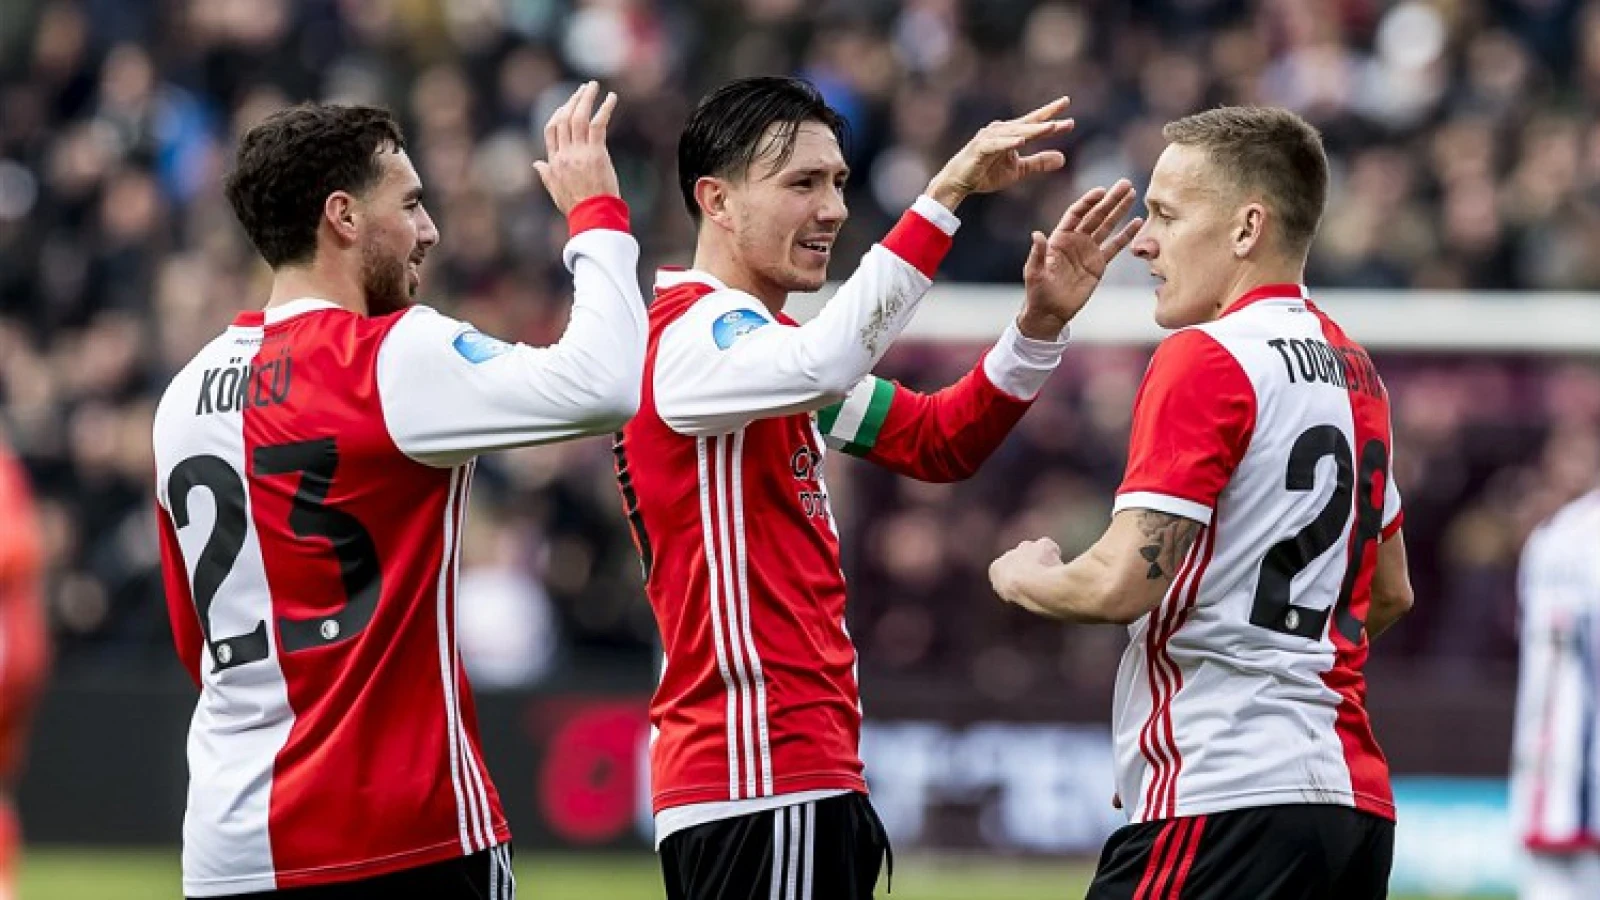 Spelersgroep Feyenoord akkoord over salarisverlaging